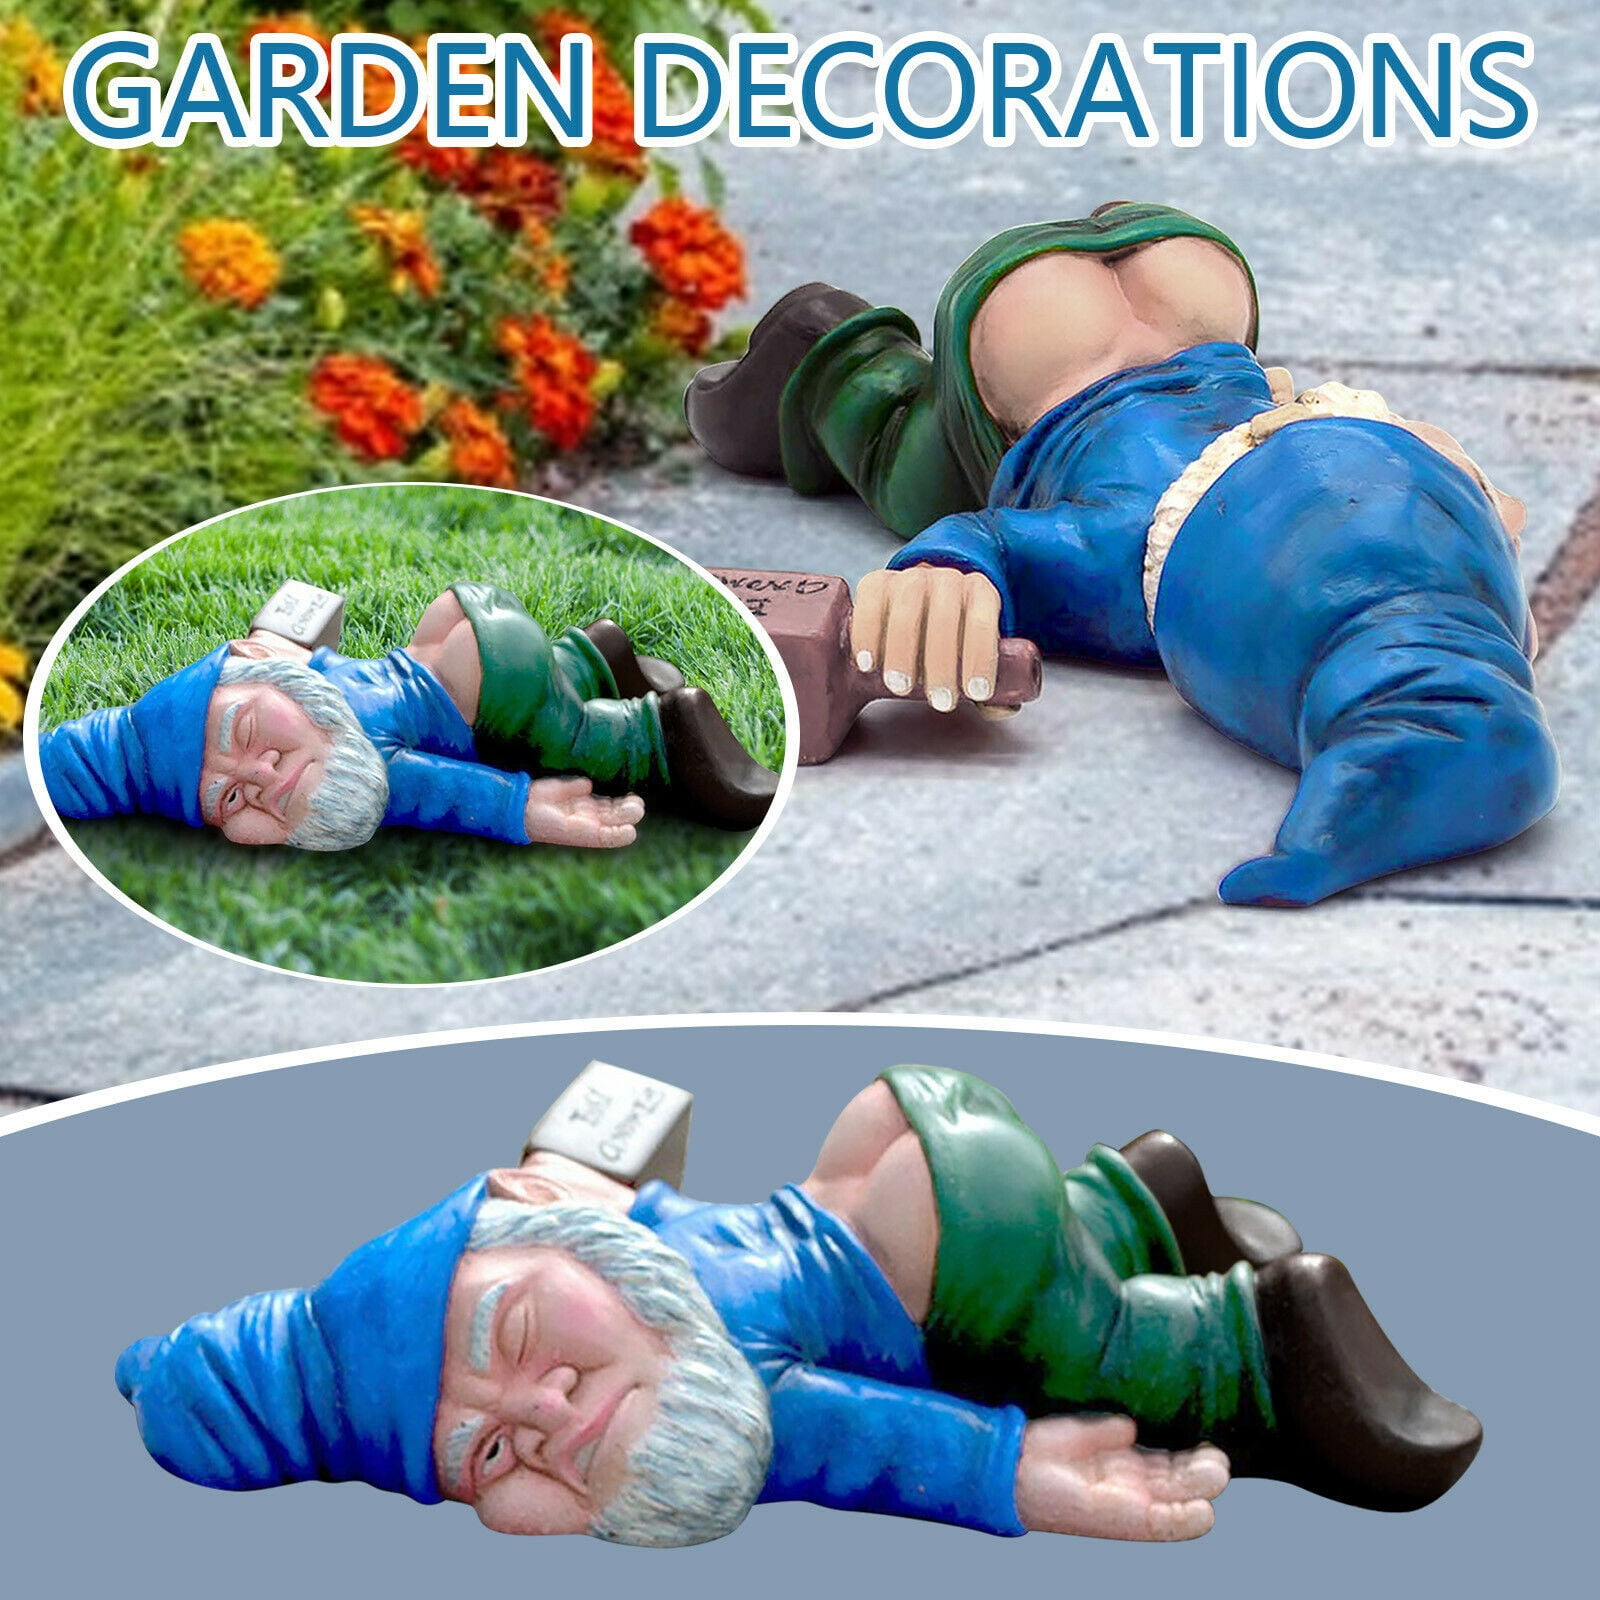 U/D Funny Drunk Garden Dwarf,Creative Drunk Dwarf Decoration,Dwarf Garden Statue,Resin Crafts,Miniature Gardening Dwarf Statue,Handmade Novelty Gift for Home Outdoors Lawn Patio Yard